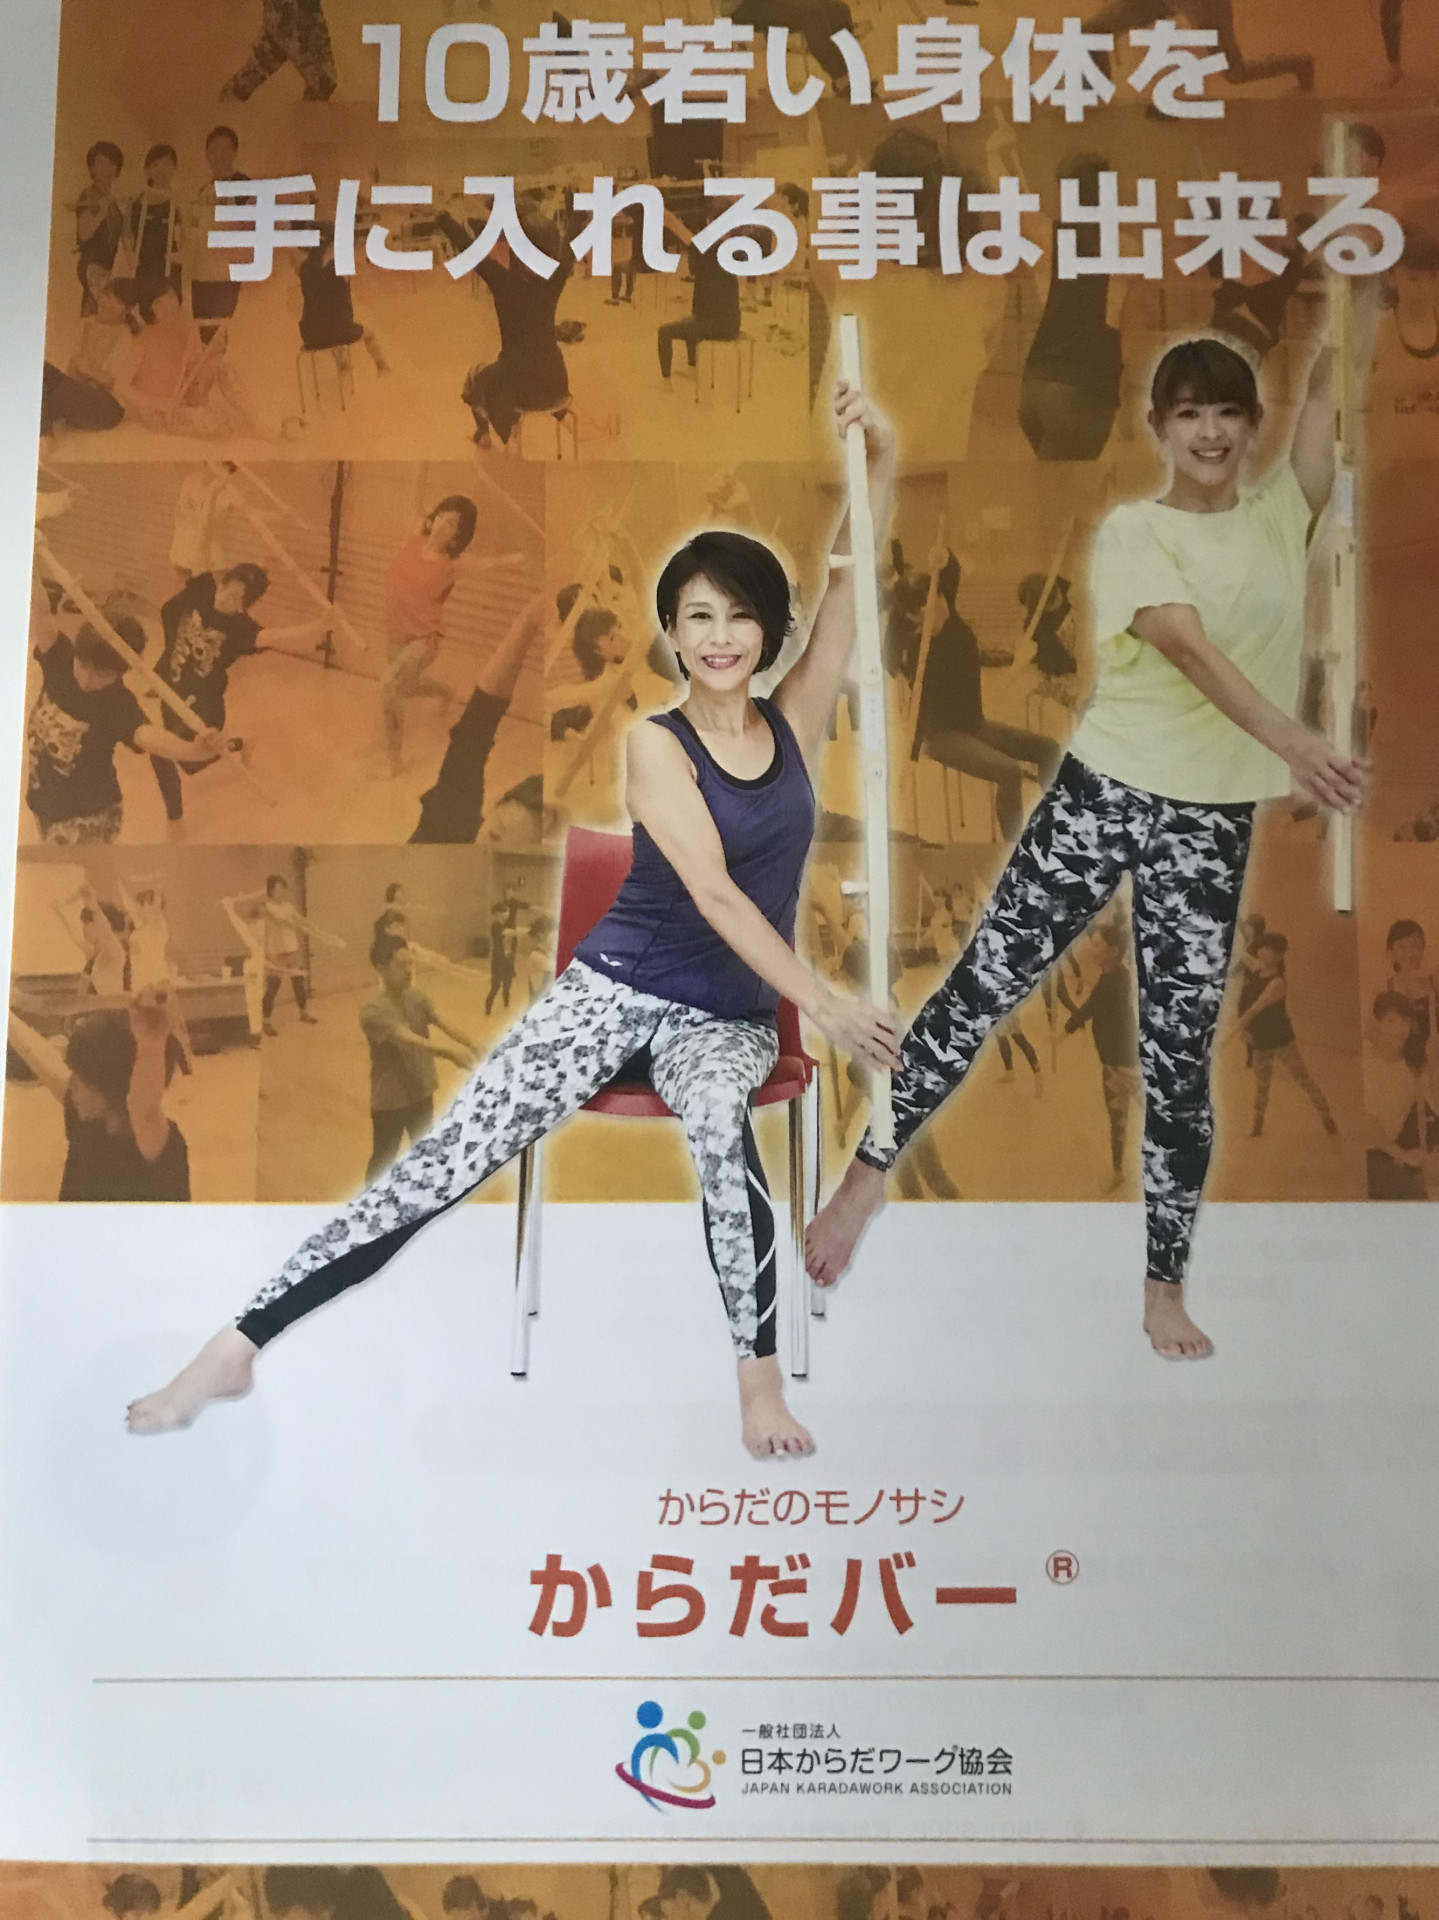 愛知県でオススメパーソナルトレーニングジム『姿勢改善/加圧&ピラティス・ドッグヨガ   One』